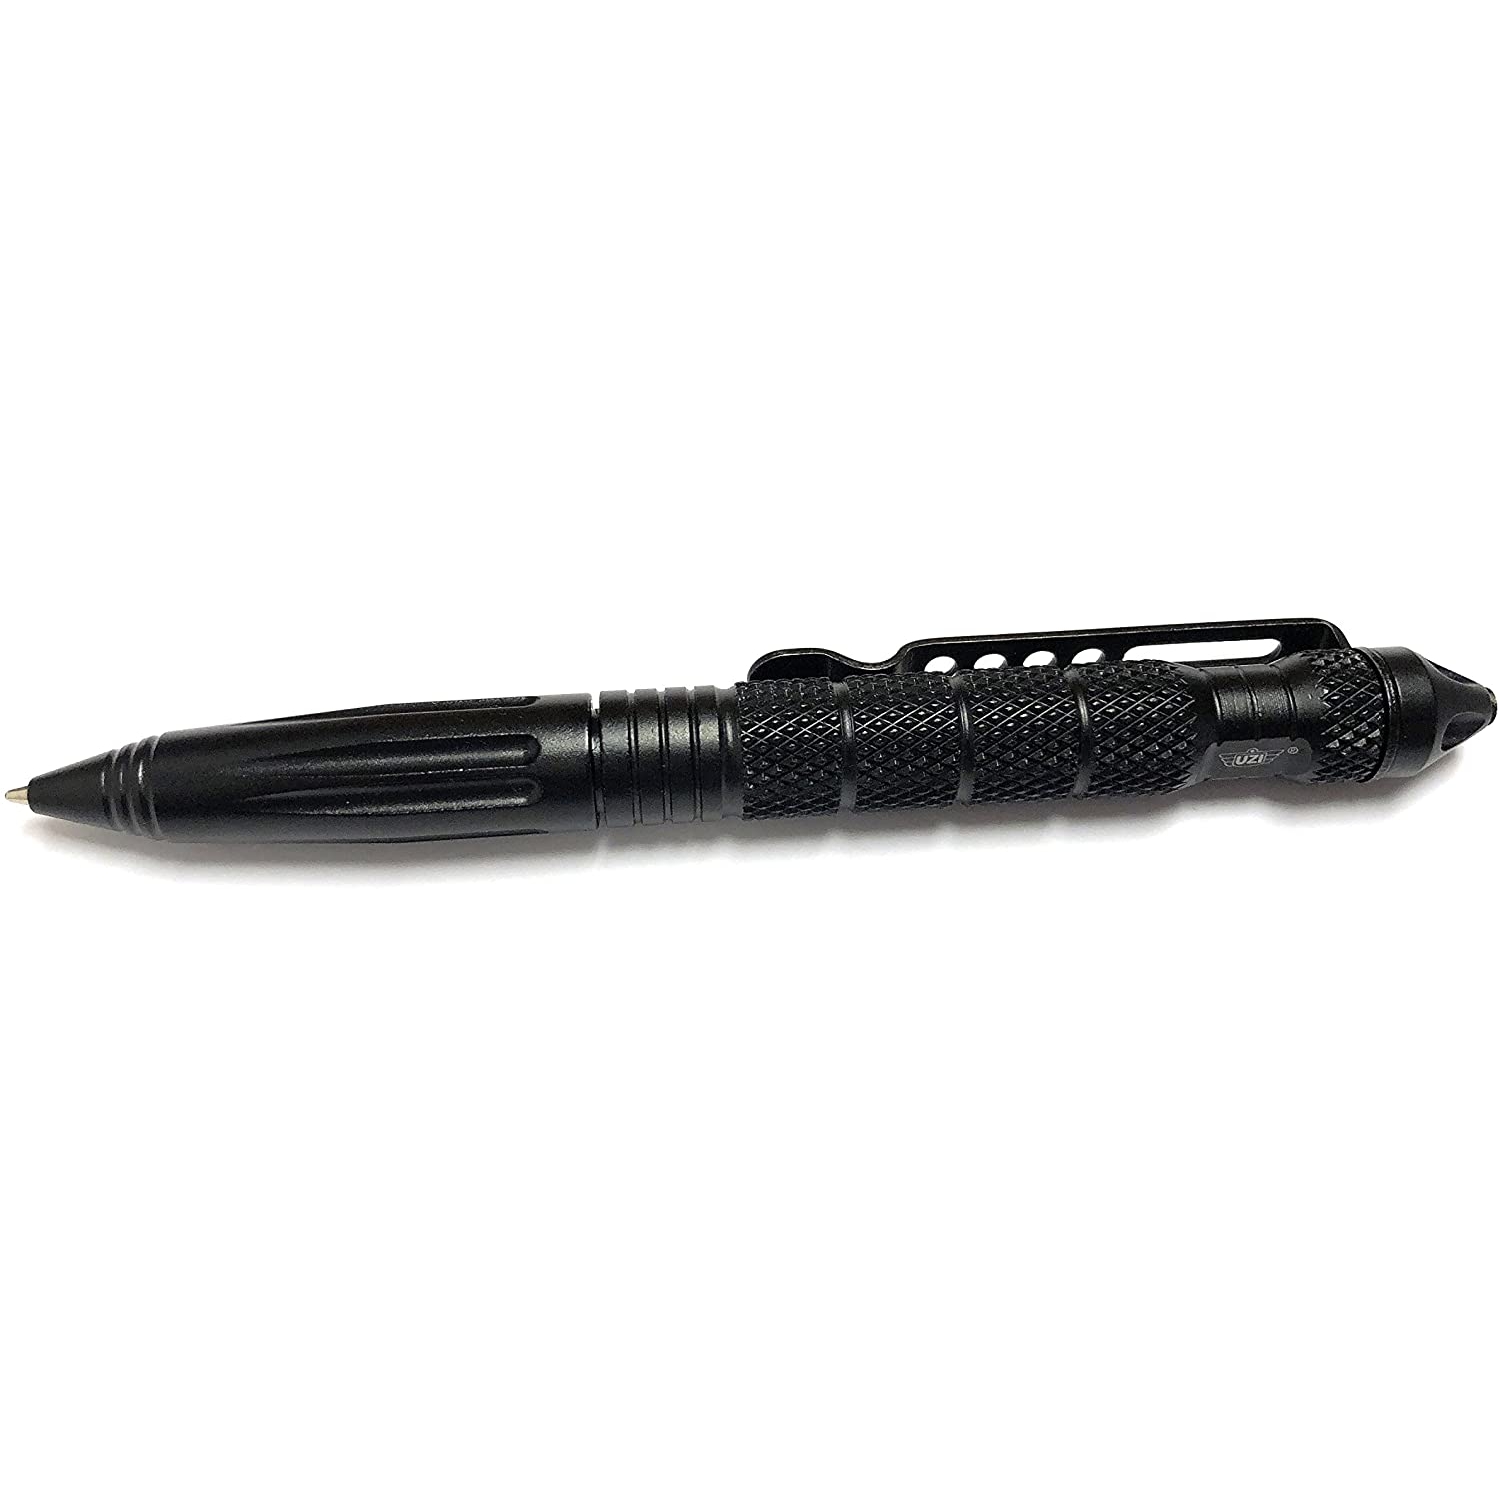 UZI - Tactical Defender Pen 2 - Gun Metal